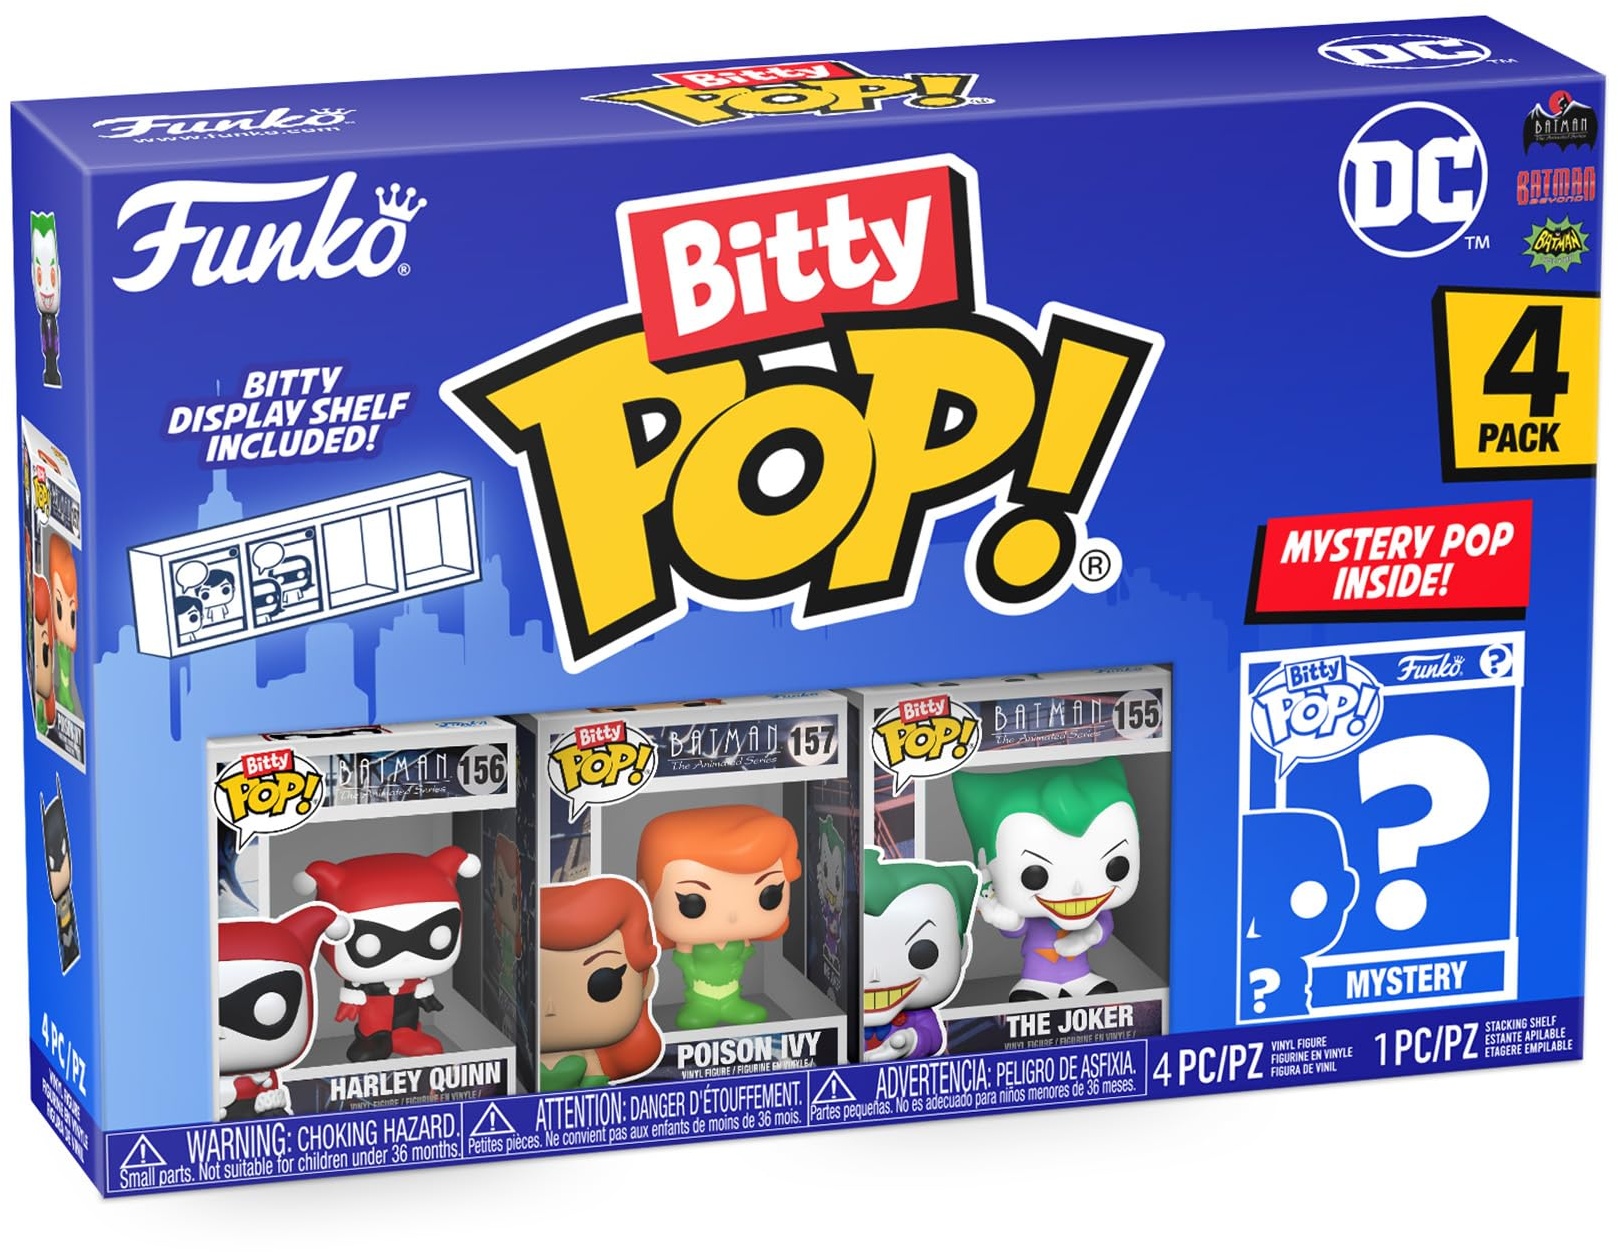 Funko Bitty Pop! DC - Harley Quinn, The Joker, Poison Ivy und eine Überraschungs-Mini-Figur - 0.9 Inch (2.2 cm) - DC Comics Sammlerstück Stapelbares Display-Regal Inklusive - Geschenkidee